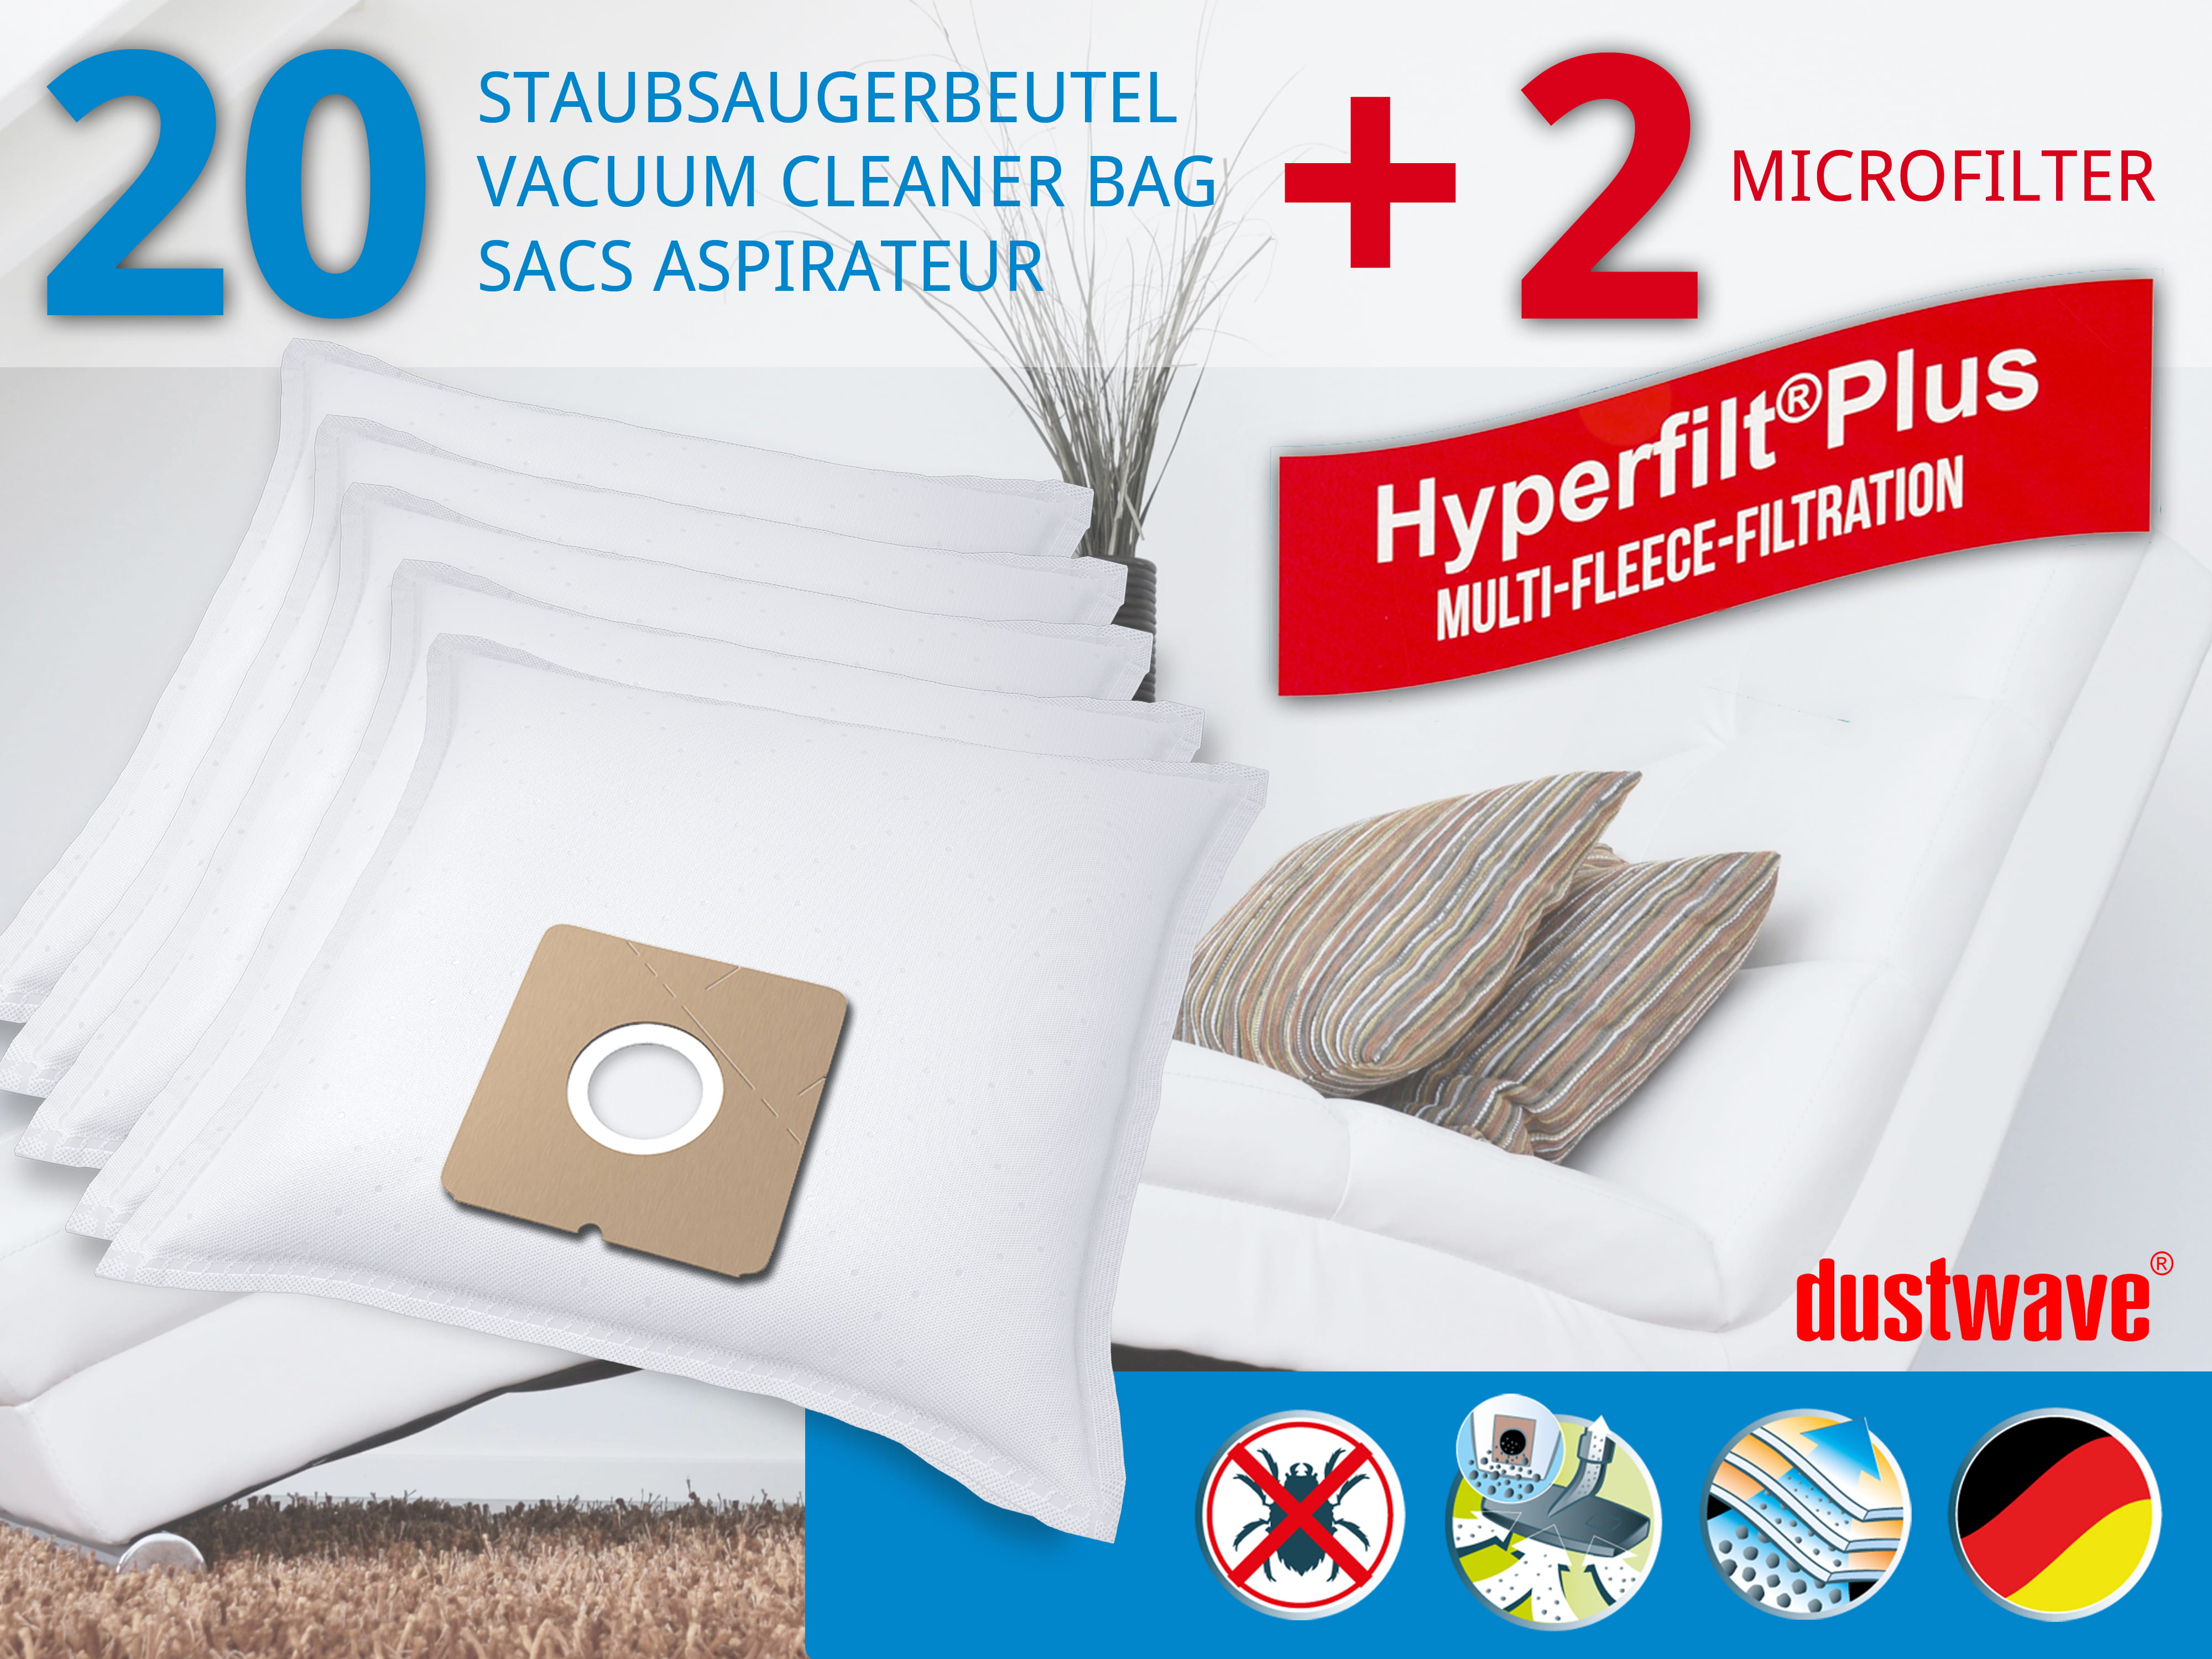 Dustwave® 20 Staubsaugerbeutel für ADMEA YL 110 / YL110 - hocheffizient mit Hygieneverschluss - Made in Germany